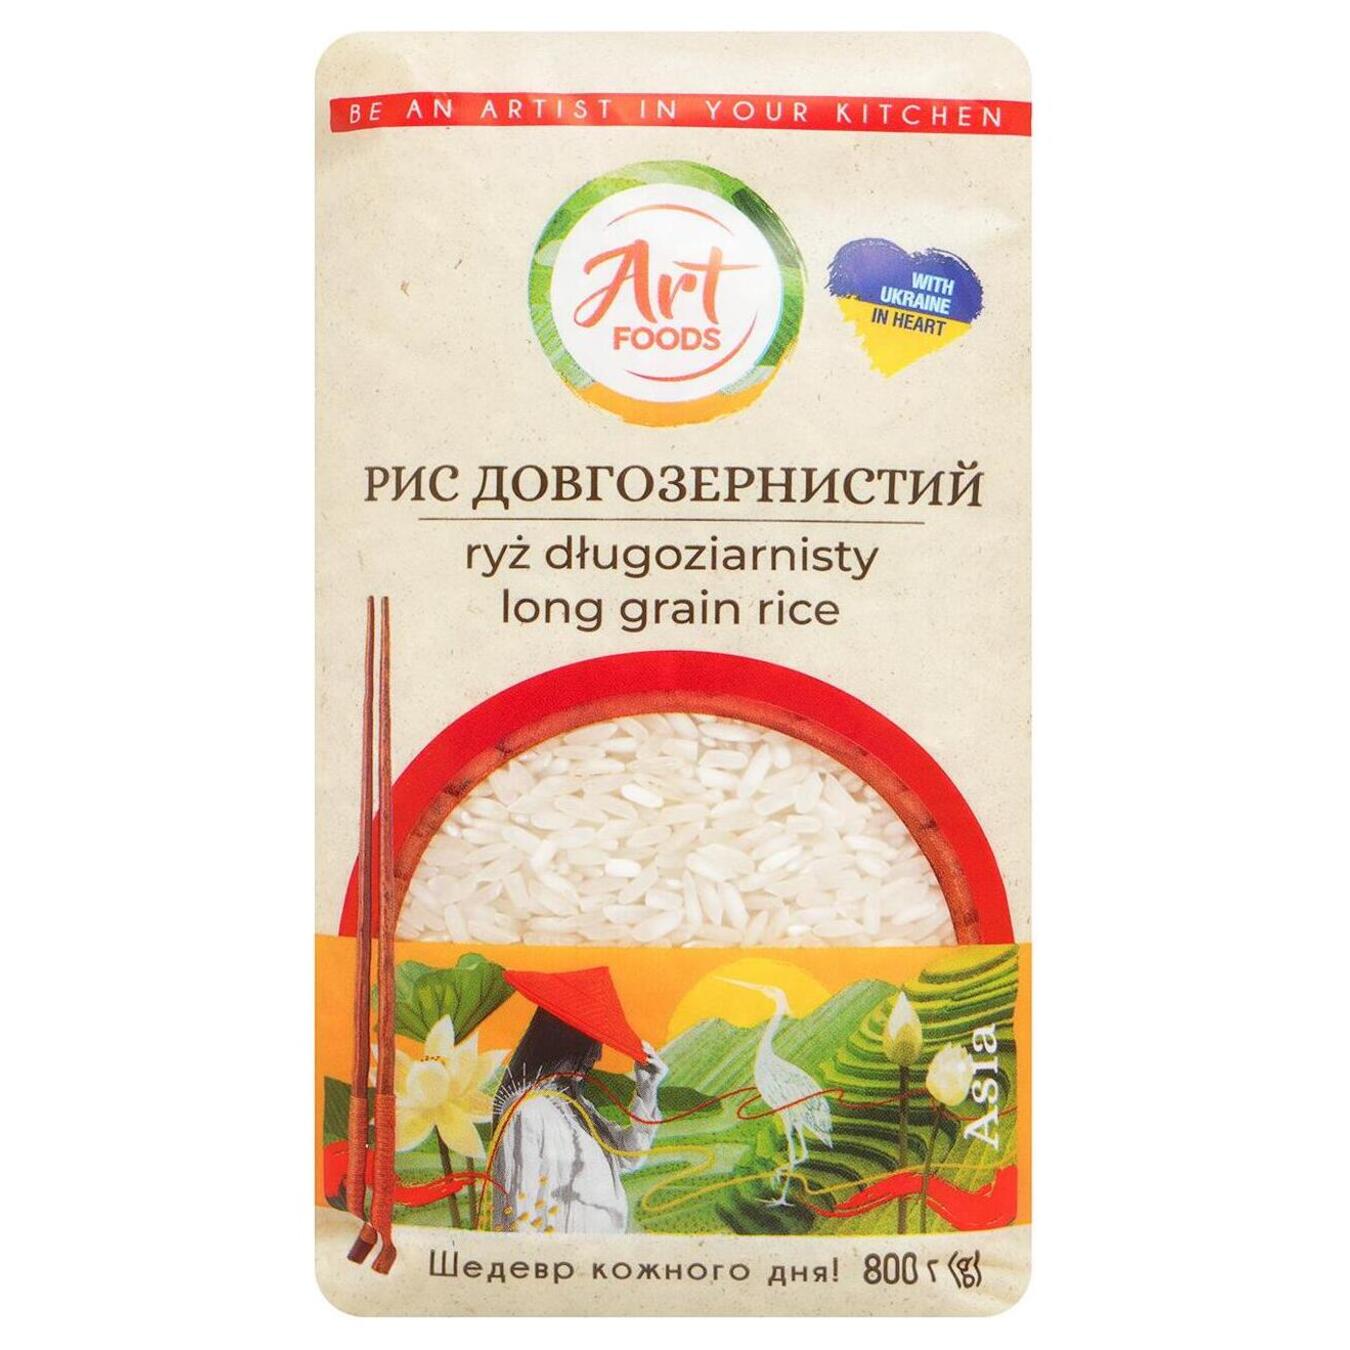 Рис длиннозернистый Art Foods 800г